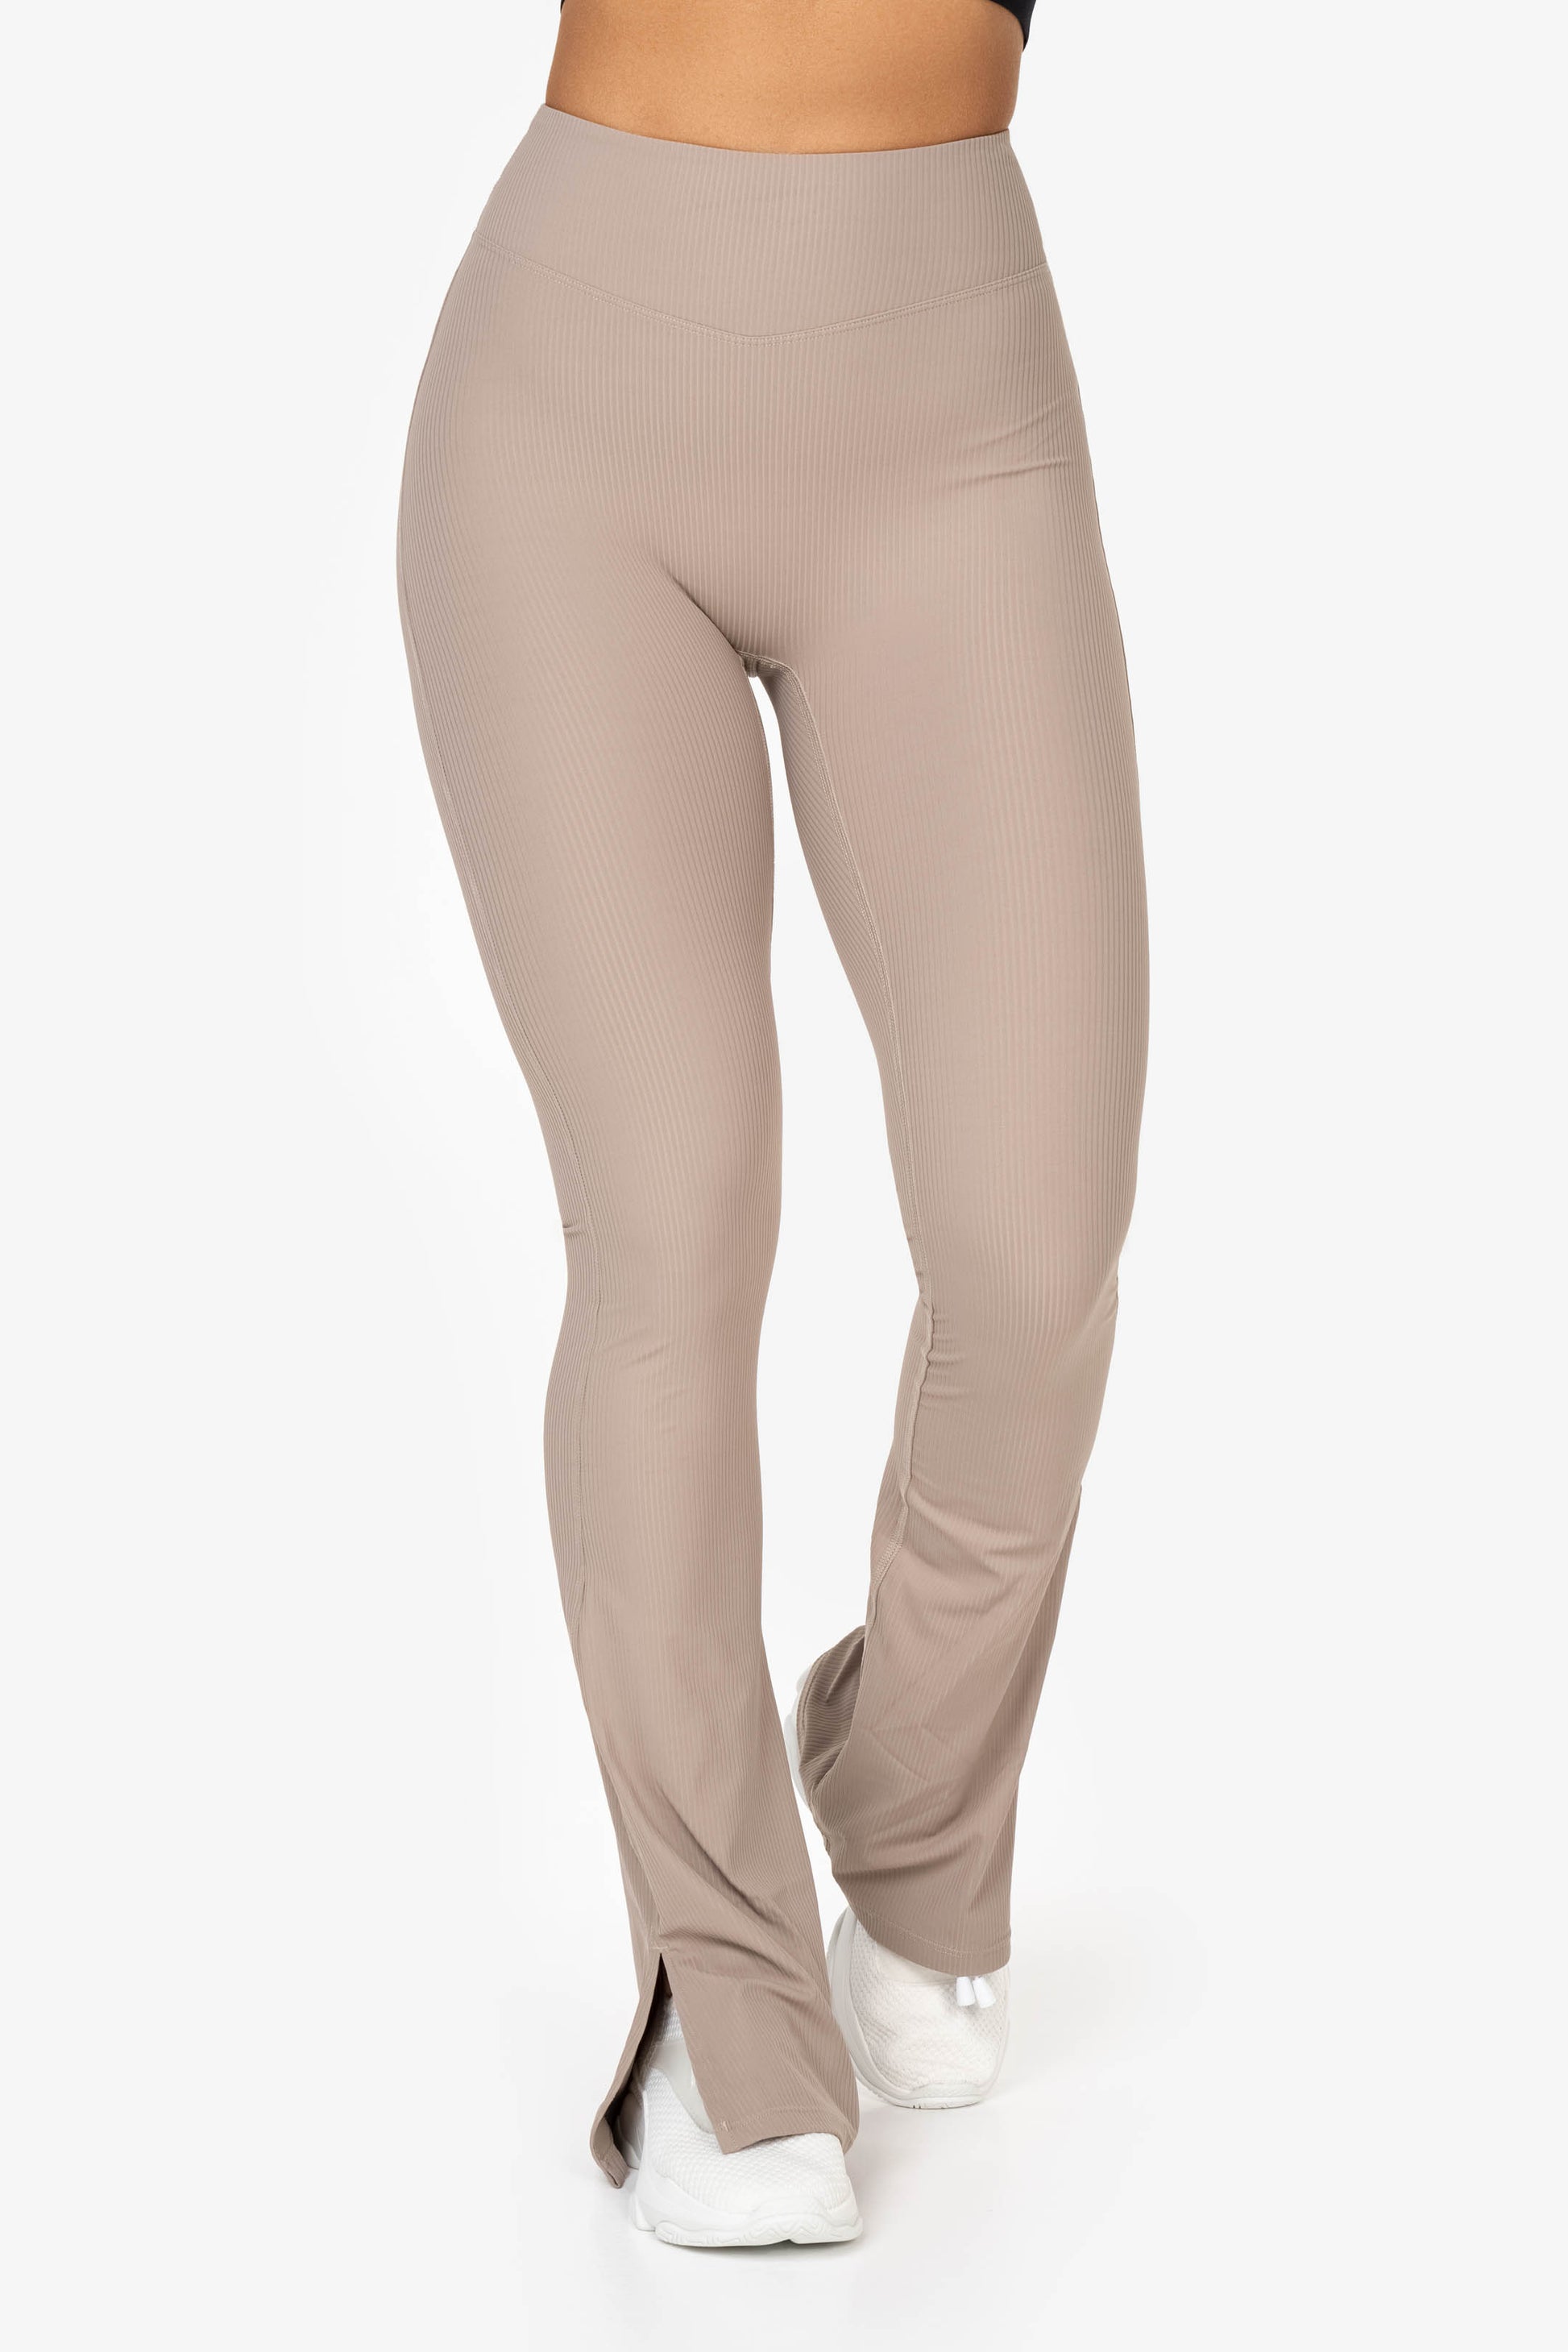 https://fammesportswear.com/cdn/shop/files/Flare-pants-beige-crop-long-sleeve70.jpg?v=1687774105&width=1946